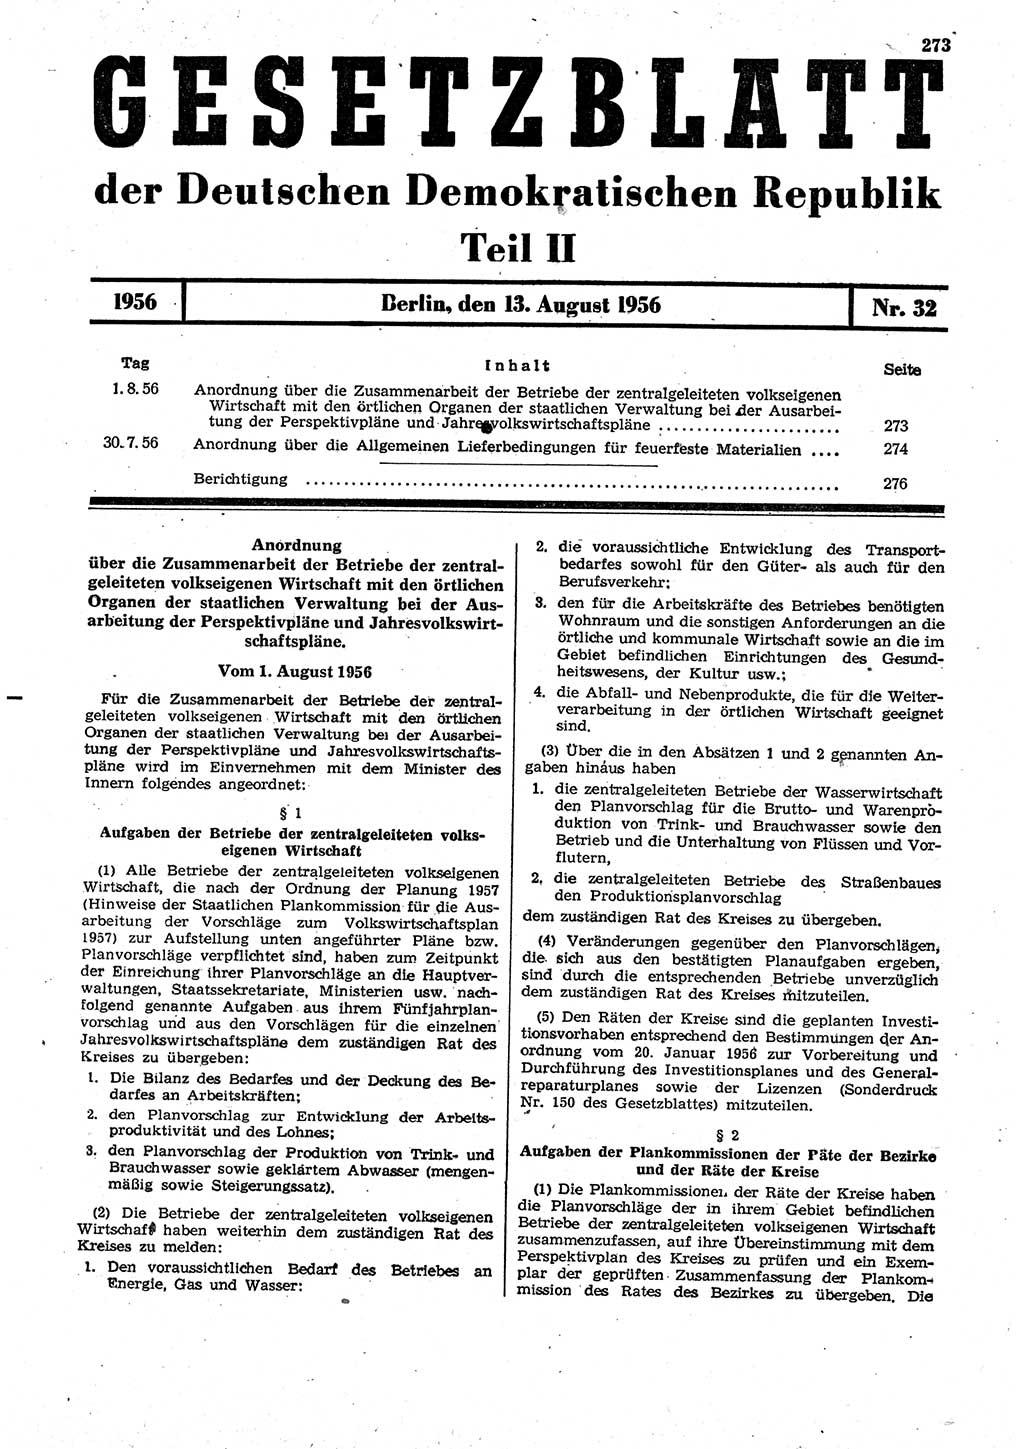 Gesetzblatt (GBl.) der Deutschen Demokratischen Republik (DDR) Teil ⅠⅠ 1956, Seite 273 (GBl. DDR ⅠⅠ 1956, S. 273)